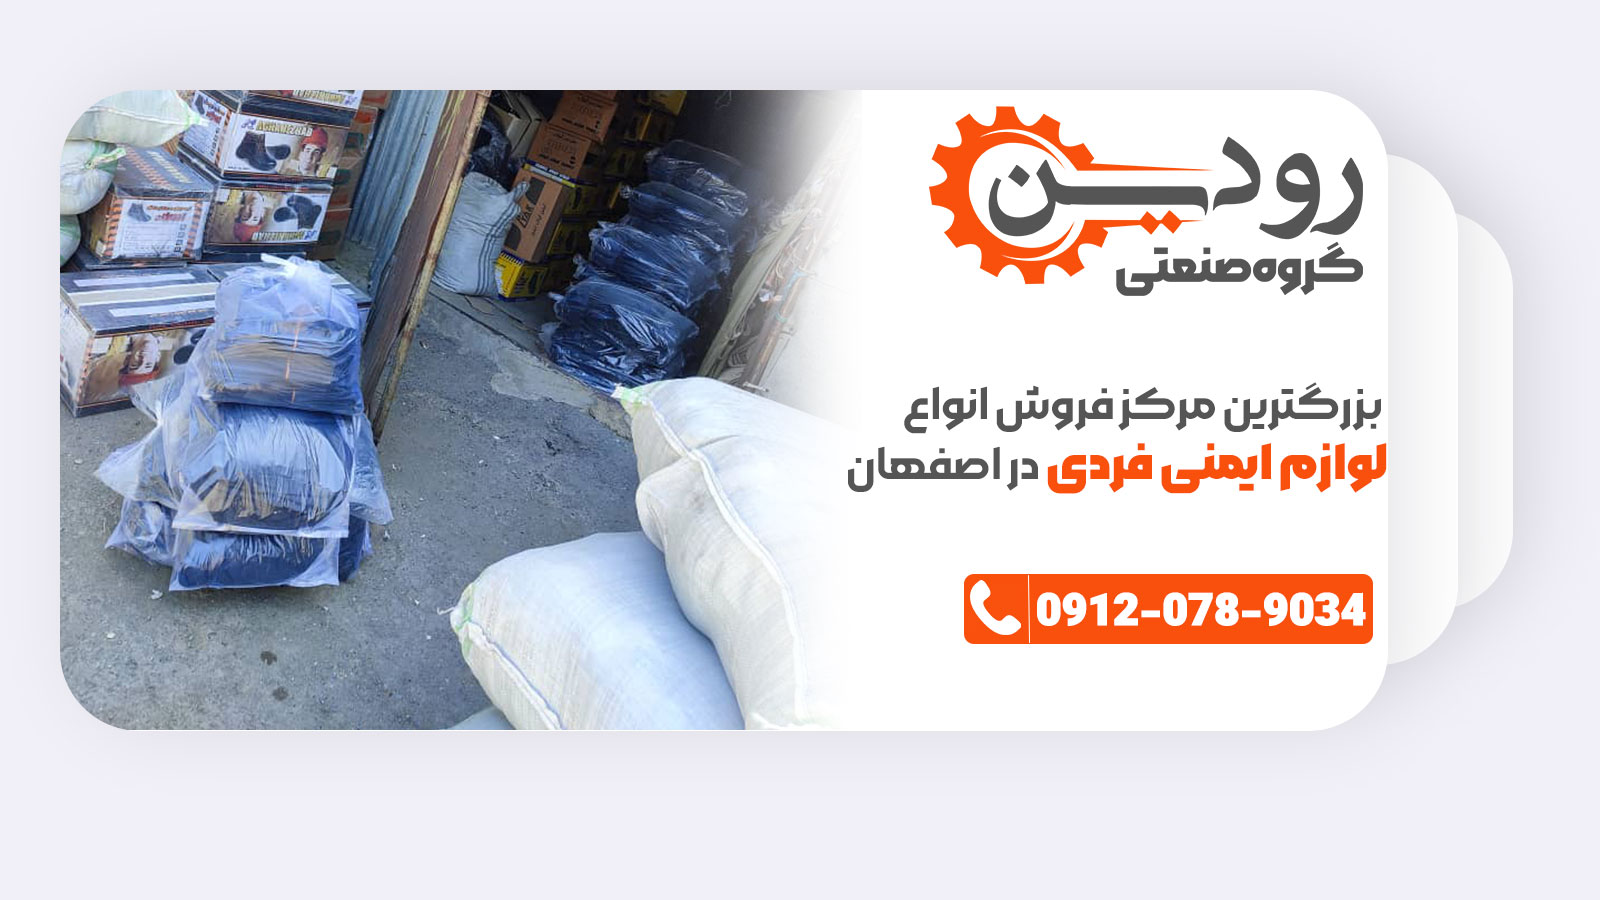 فروشگاه کفش ایمنی اصفهان بستر خرید اینترنتی را برای مشتریان به وجود آورده است.